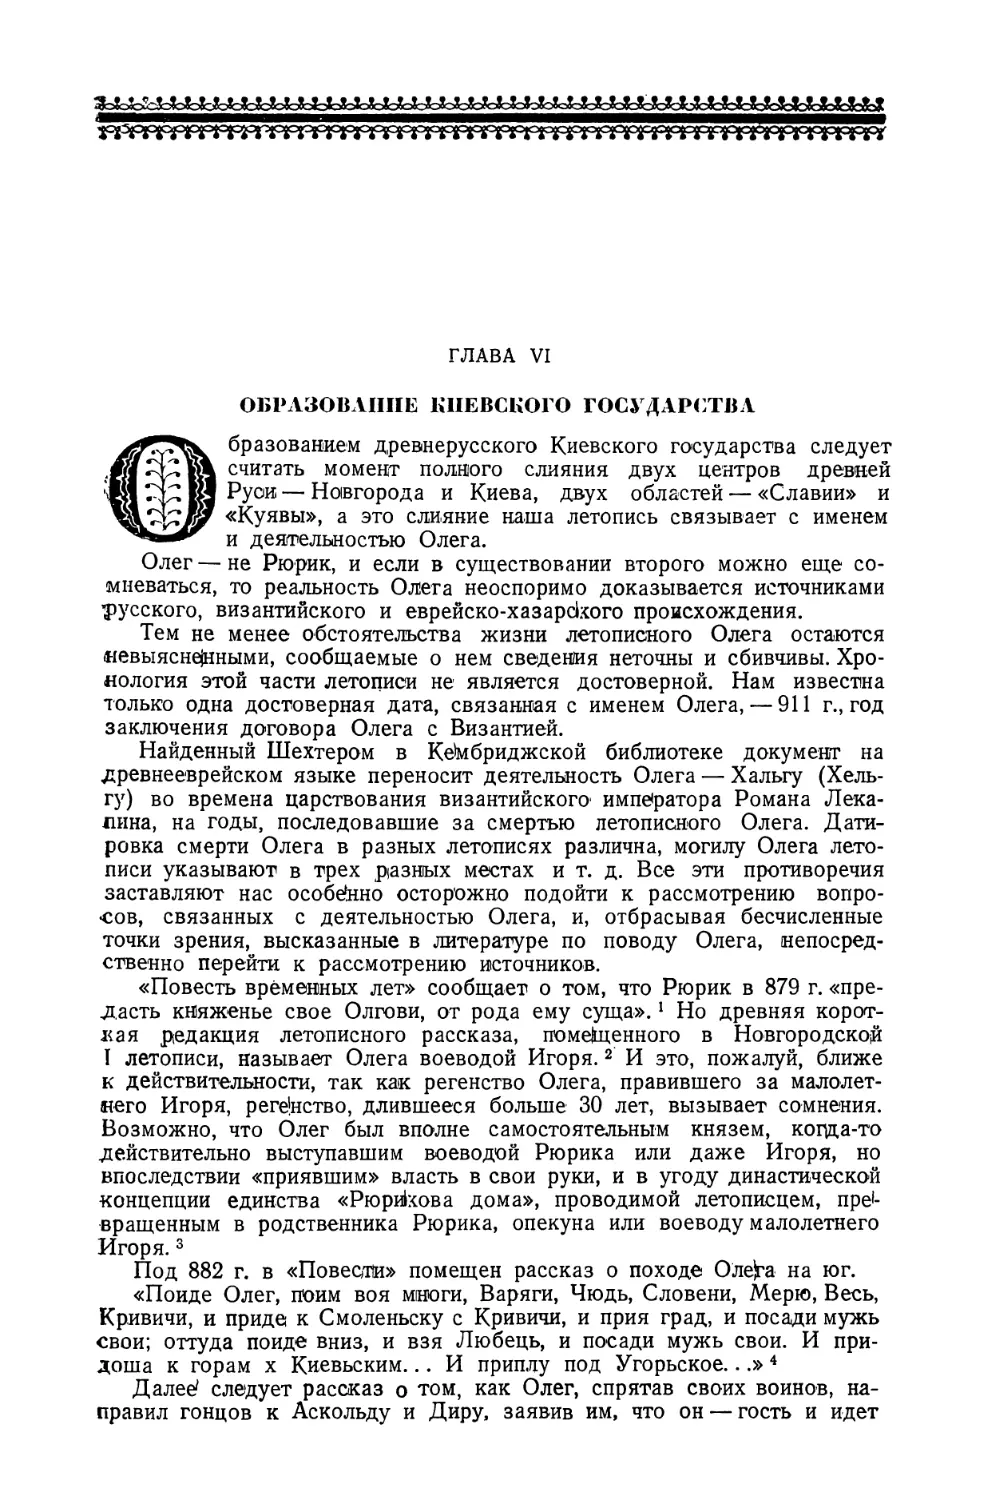 Глава VI. Образование Киевского государства